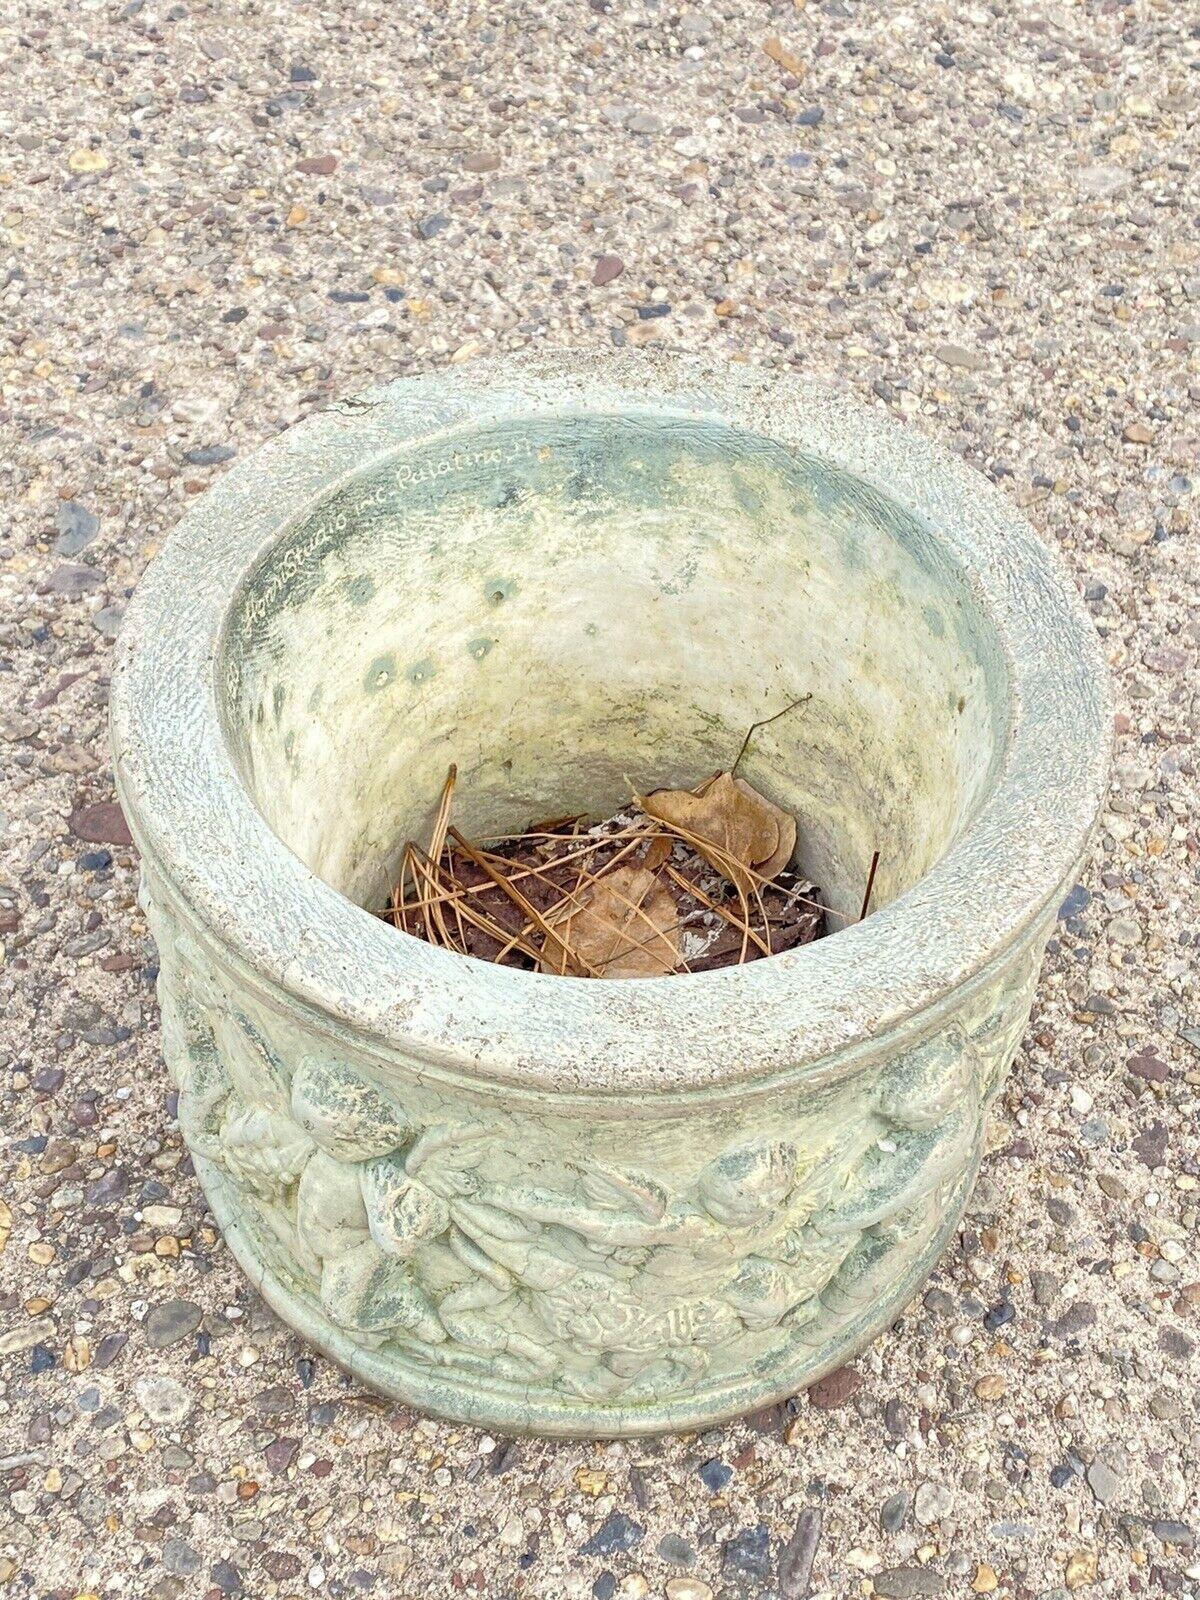 Henri Studio Concrete Cement Small Round Classical Cherub Garden Planter Pot In Good Condition For Sale In Philadelphia, PA